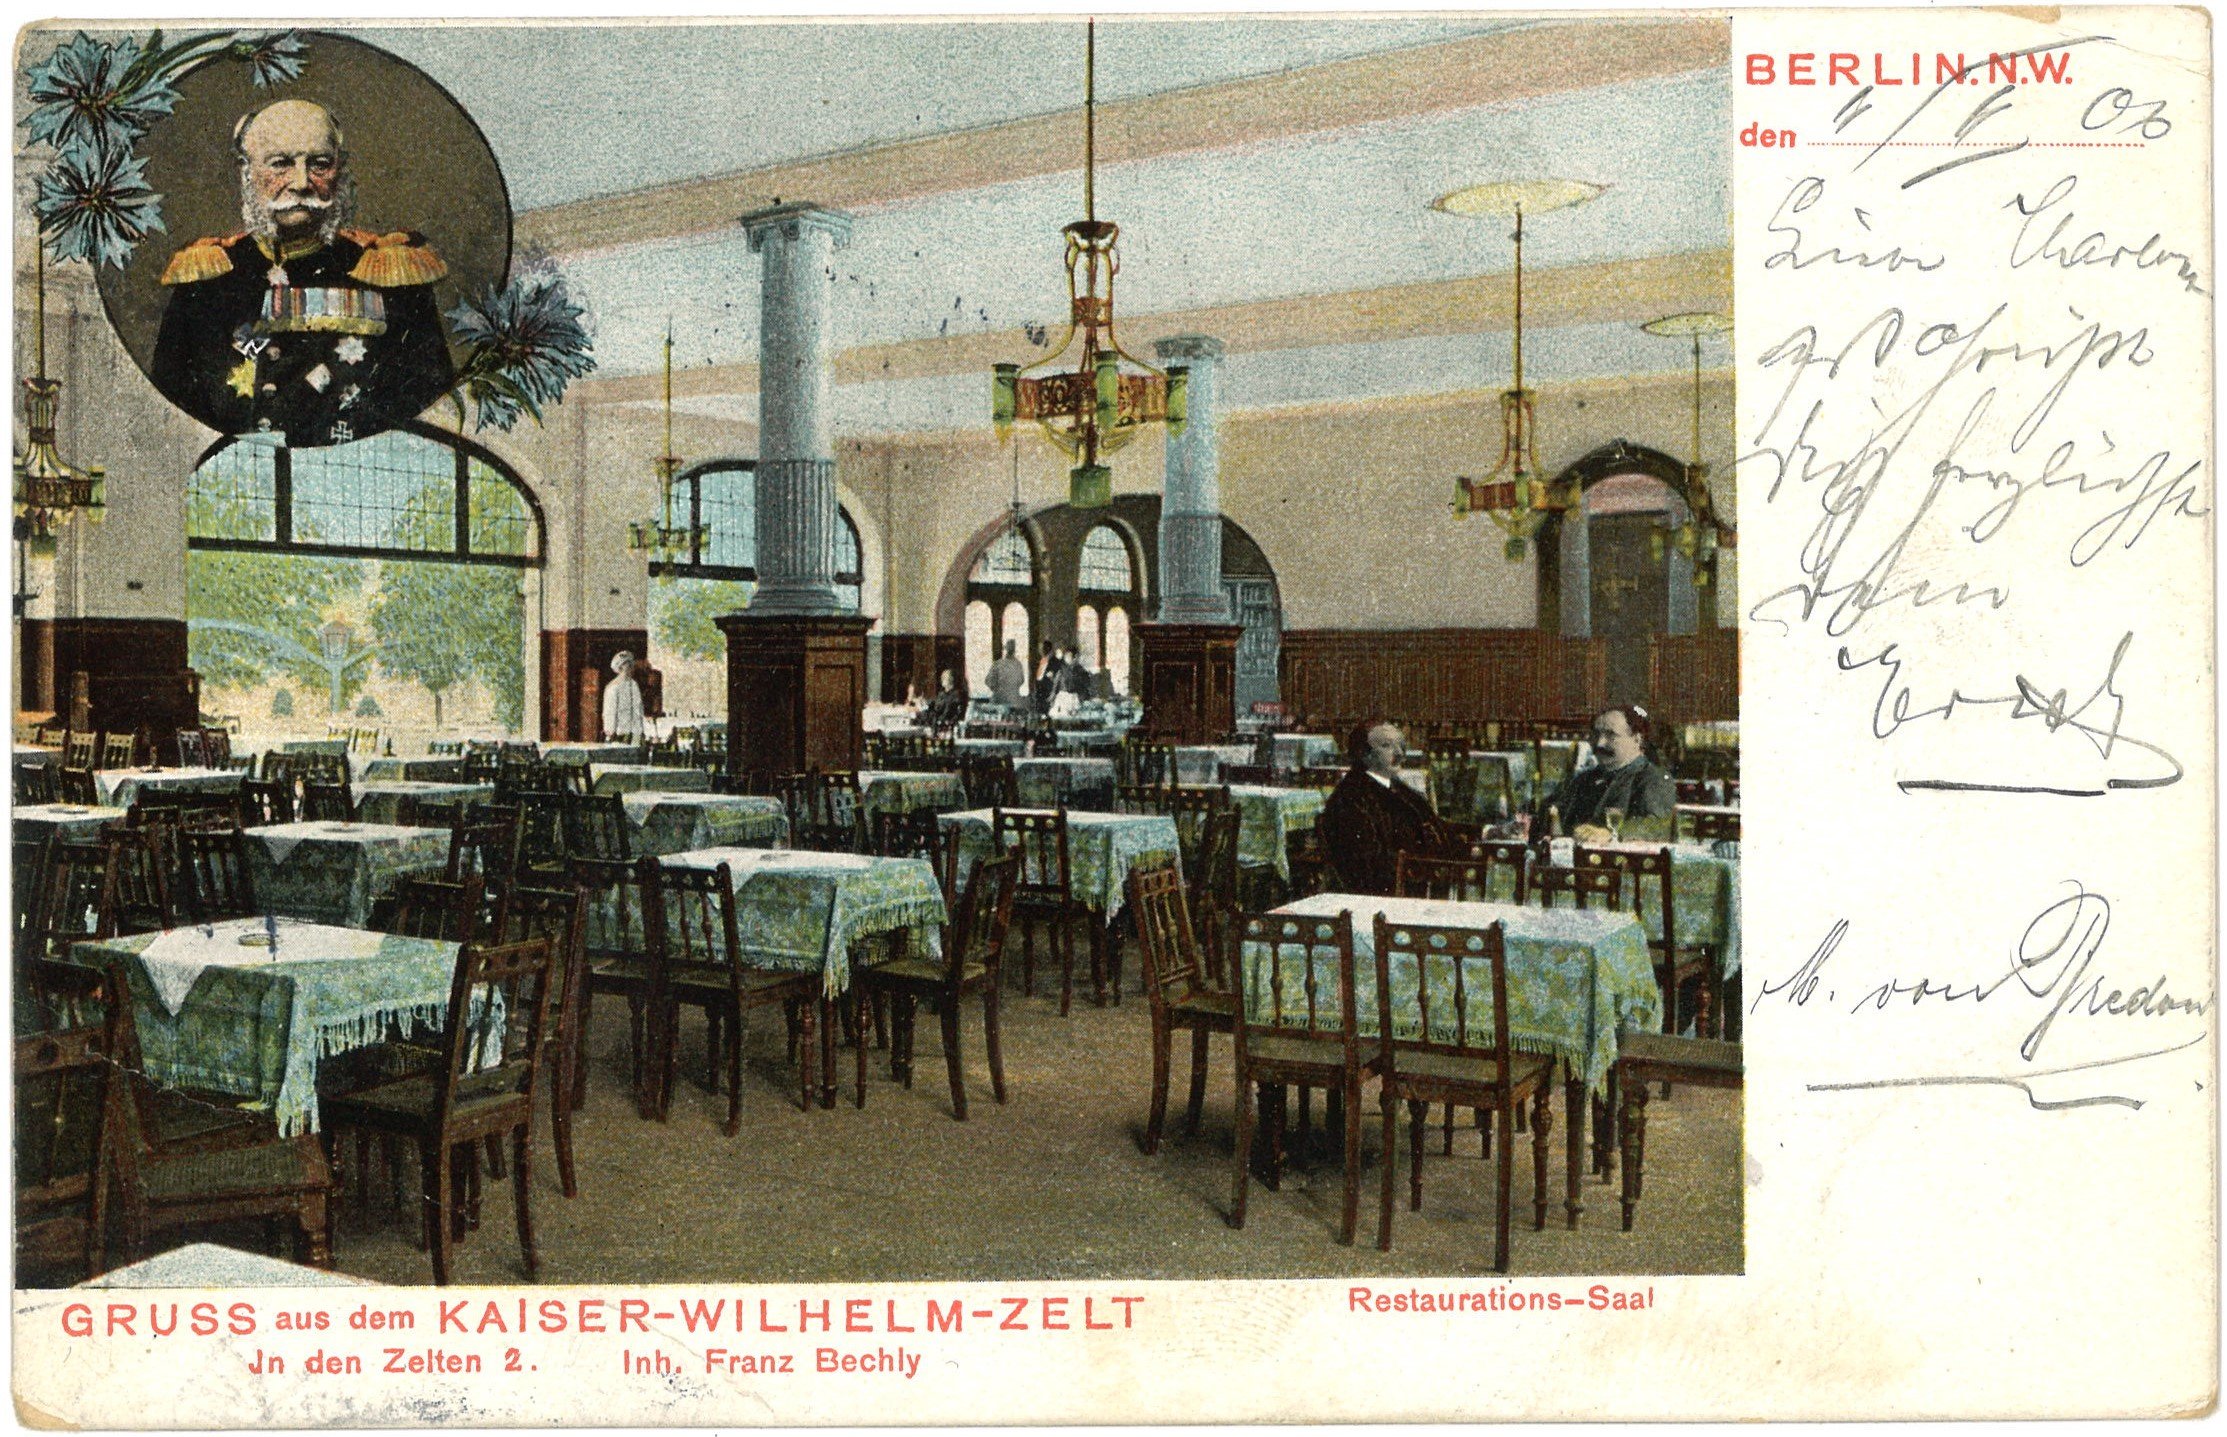 Berlin-Tiergarten: Kaiser-Wilhelm-Zelt (In den Zelten 2), Restaurations-Festsaal (Landesgeschichtliche Vereinigung für die Mark Brandenburg e.V. CC BY)